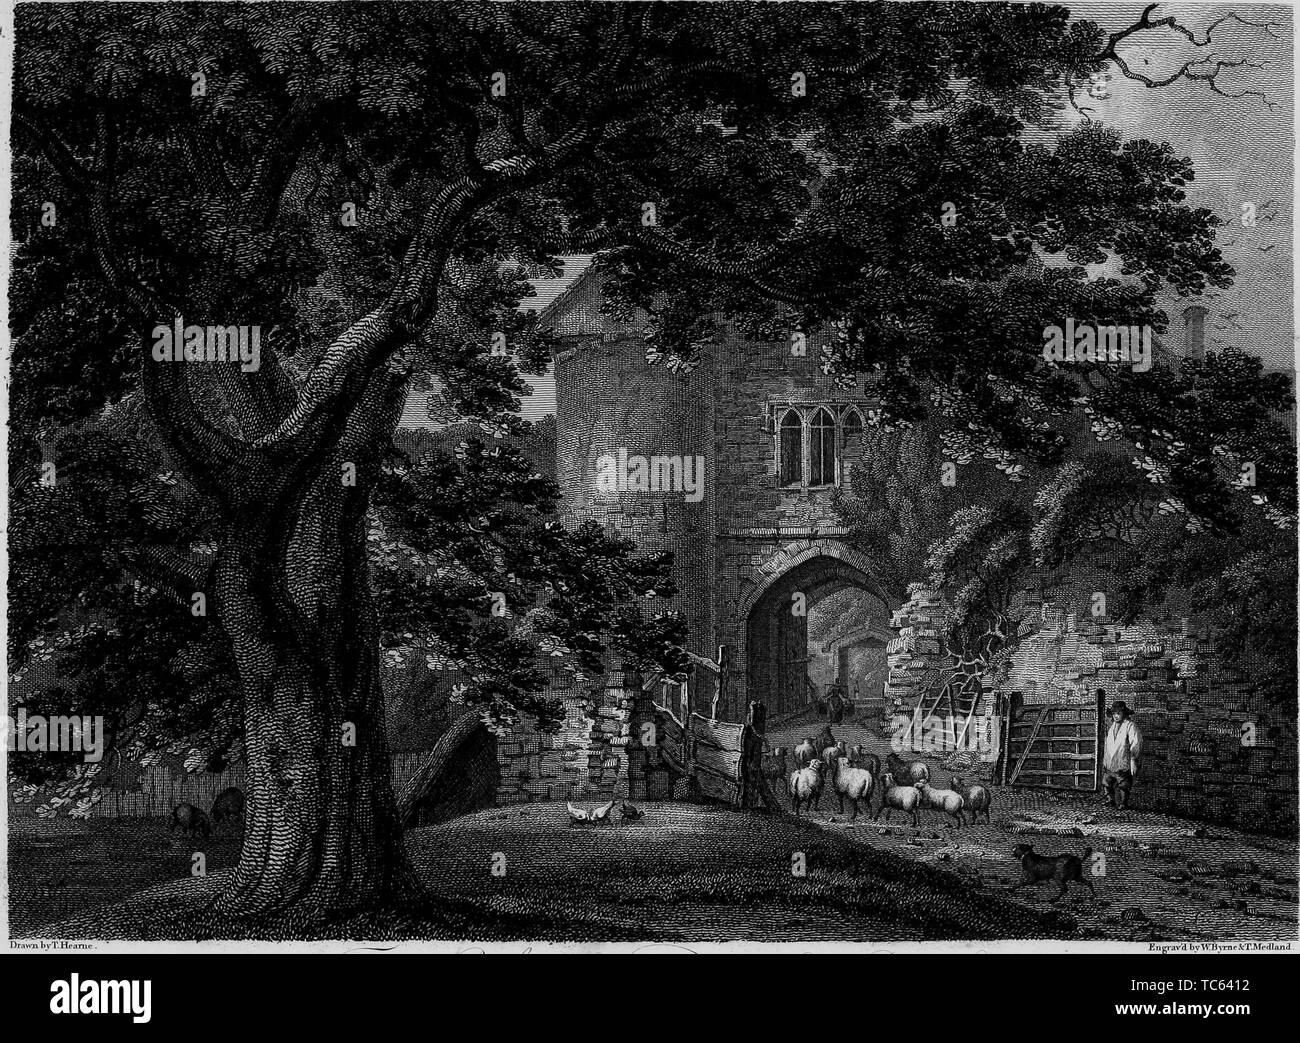 Incisione del Castello di Allington in Allington, Kent, Inghilterra, dal libro "Antichità di Gran Bretagna' da William Byrne e Thomas Hearne, 1825. La cortesia Internet Archive. () Foto Stock